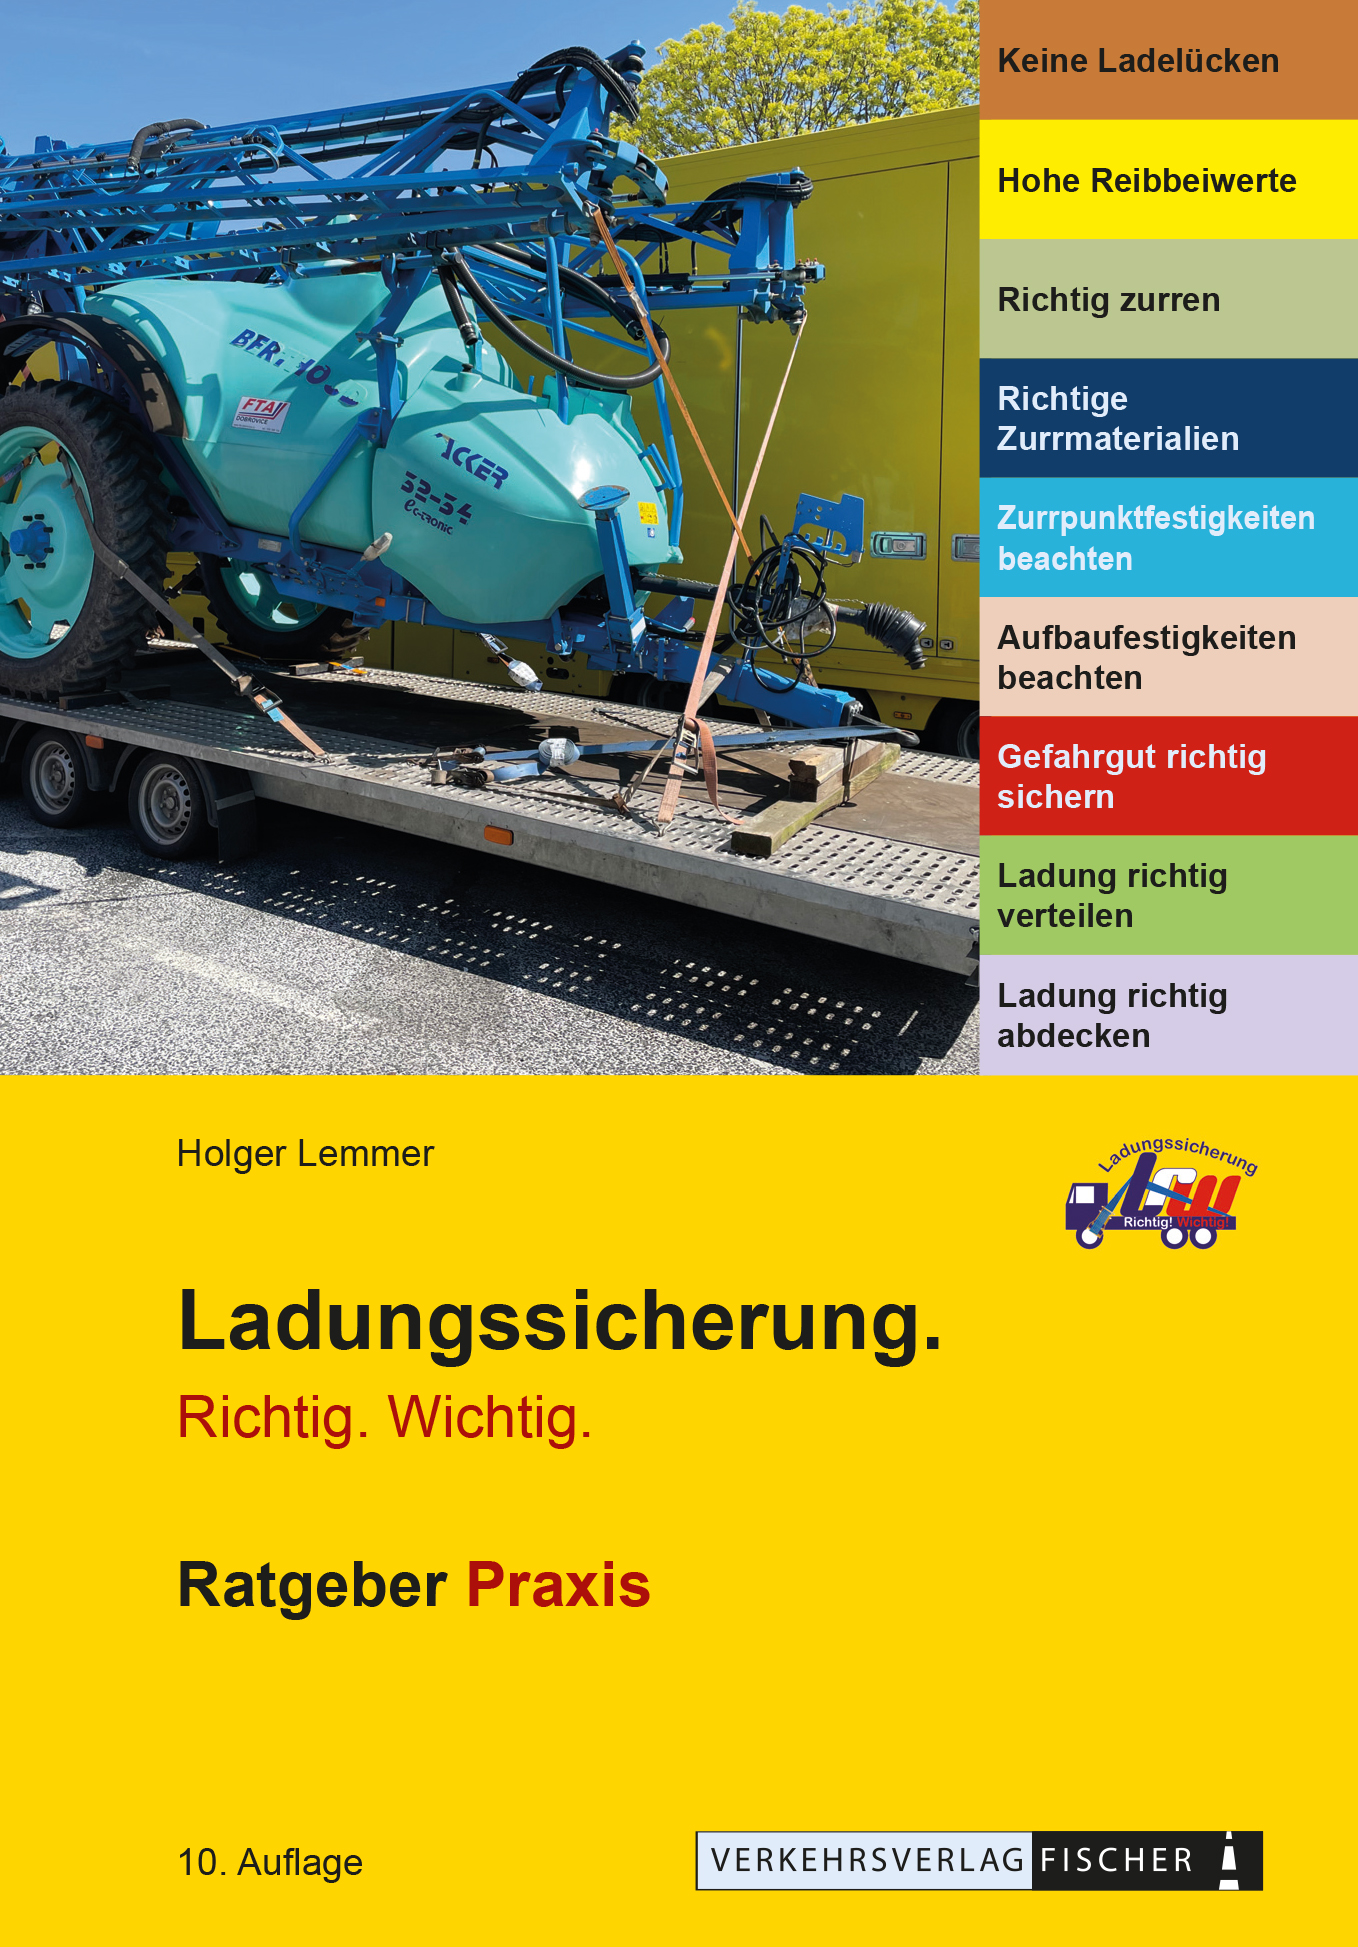 Handbuch: Ladungssicherung von Gefahrgut - sicher unterwegs - In eigener  Sache, Gefahrgut, News